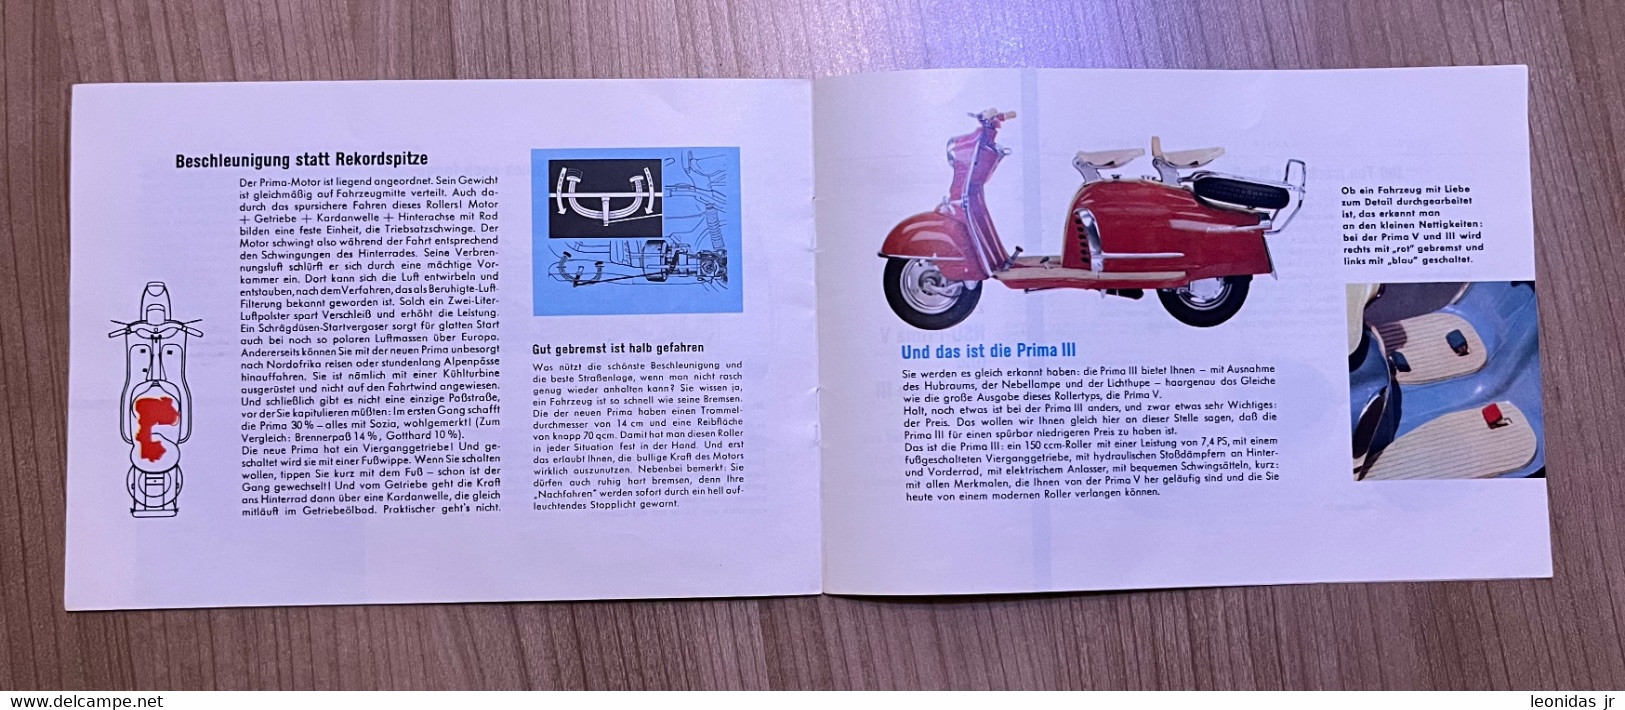 Deutschlands Meistgekaufter Motorroller - Catalogue - Catalogues